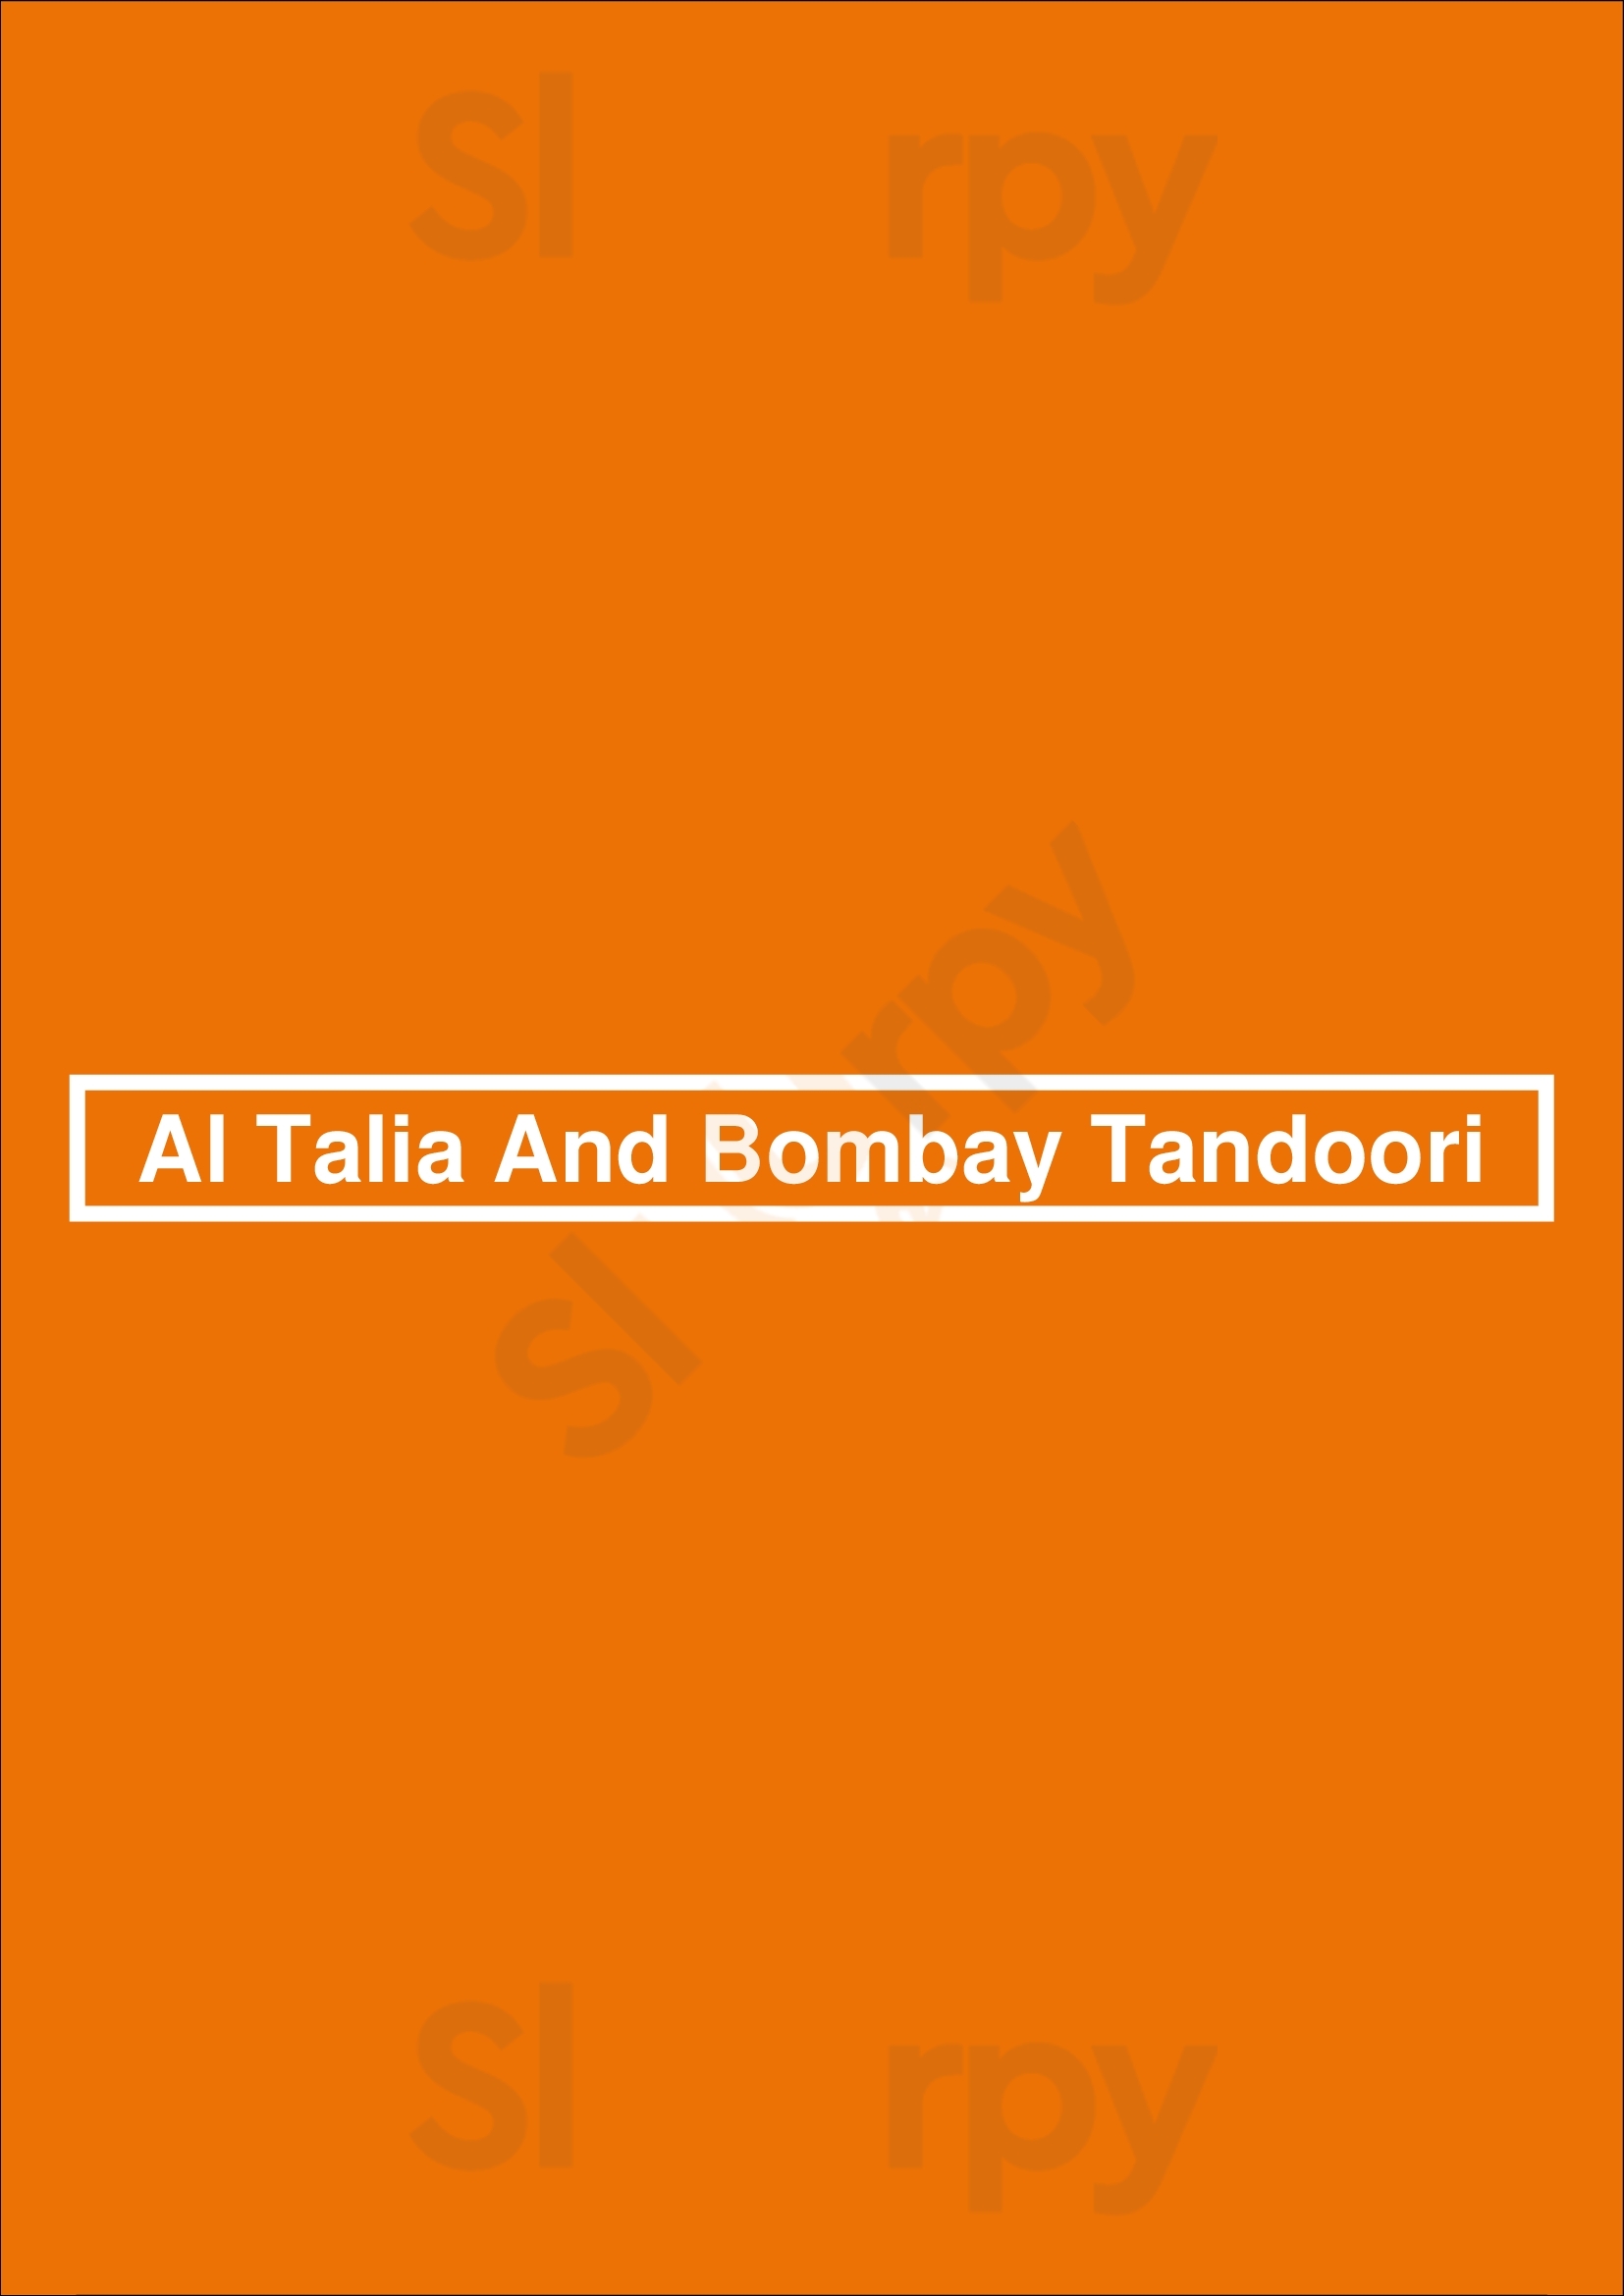 Al Talia And Bombay Tandoori Leeds Menu - 1